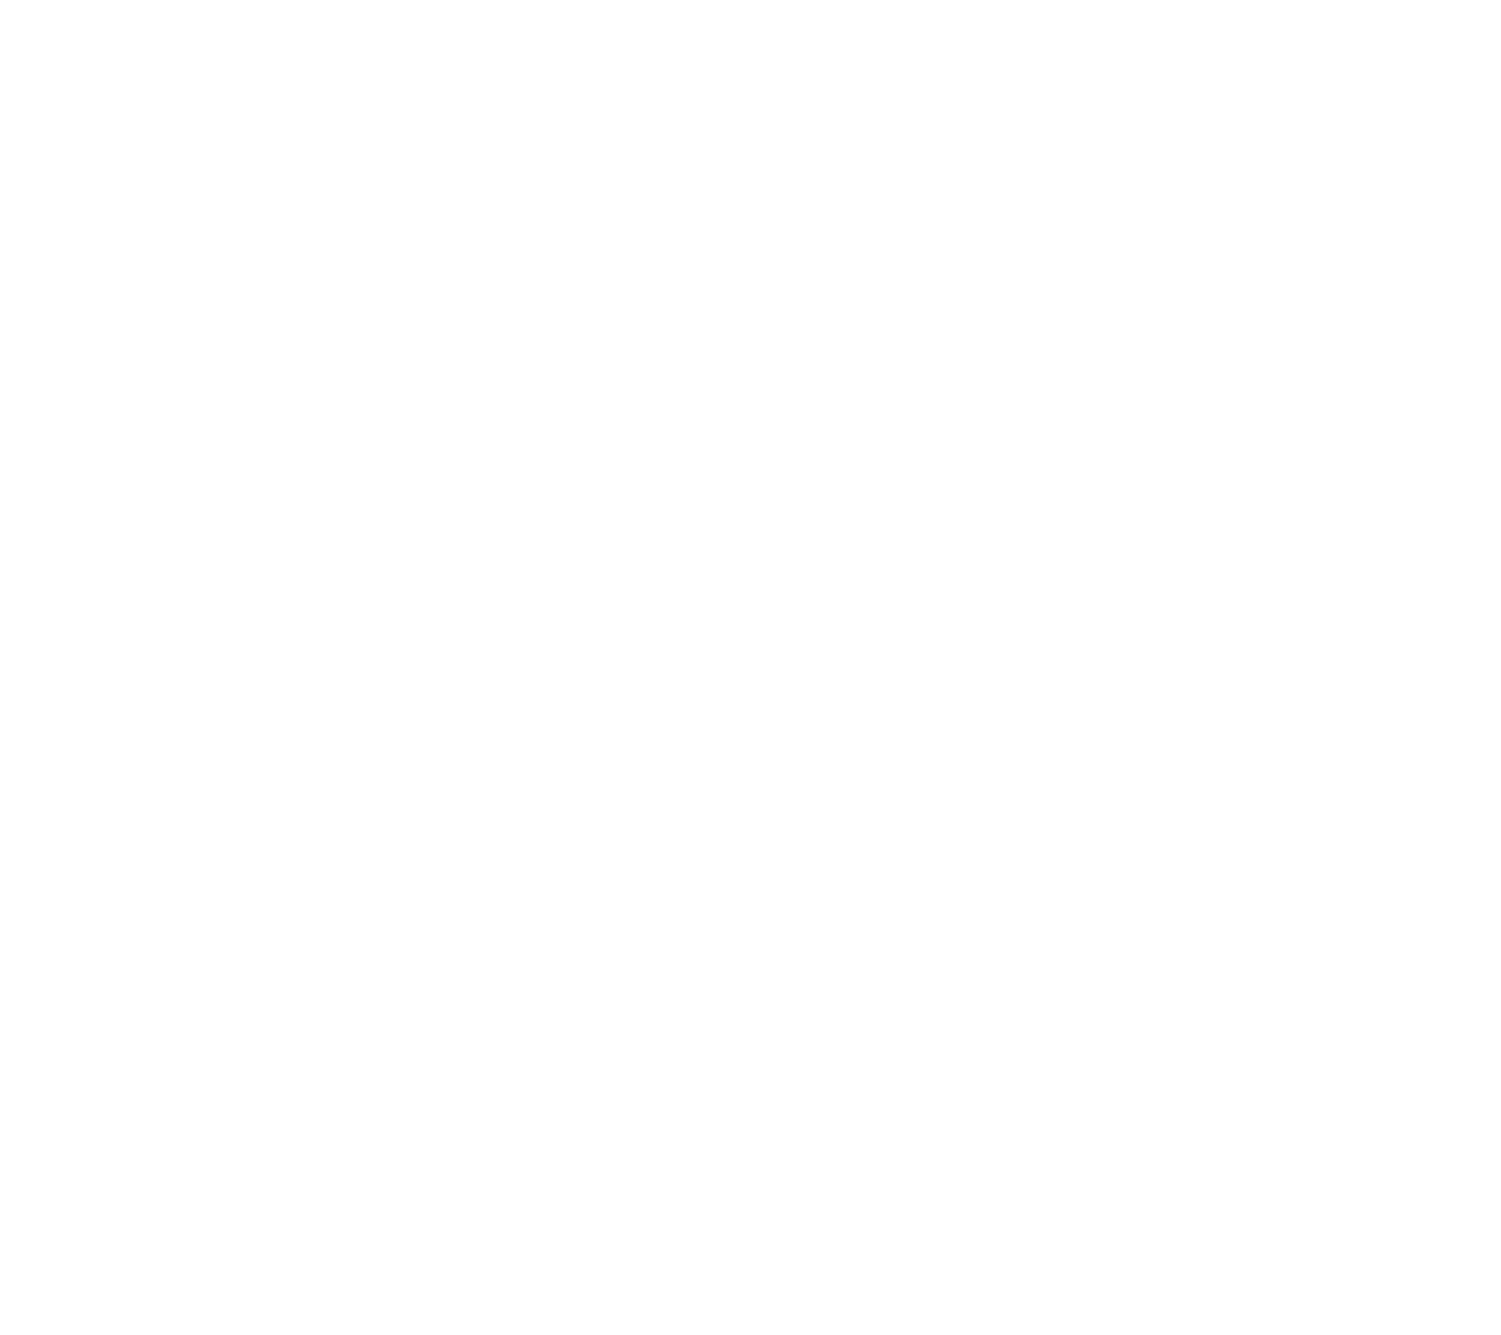 Garmin logo for dark backgrounds (transparent PNG)